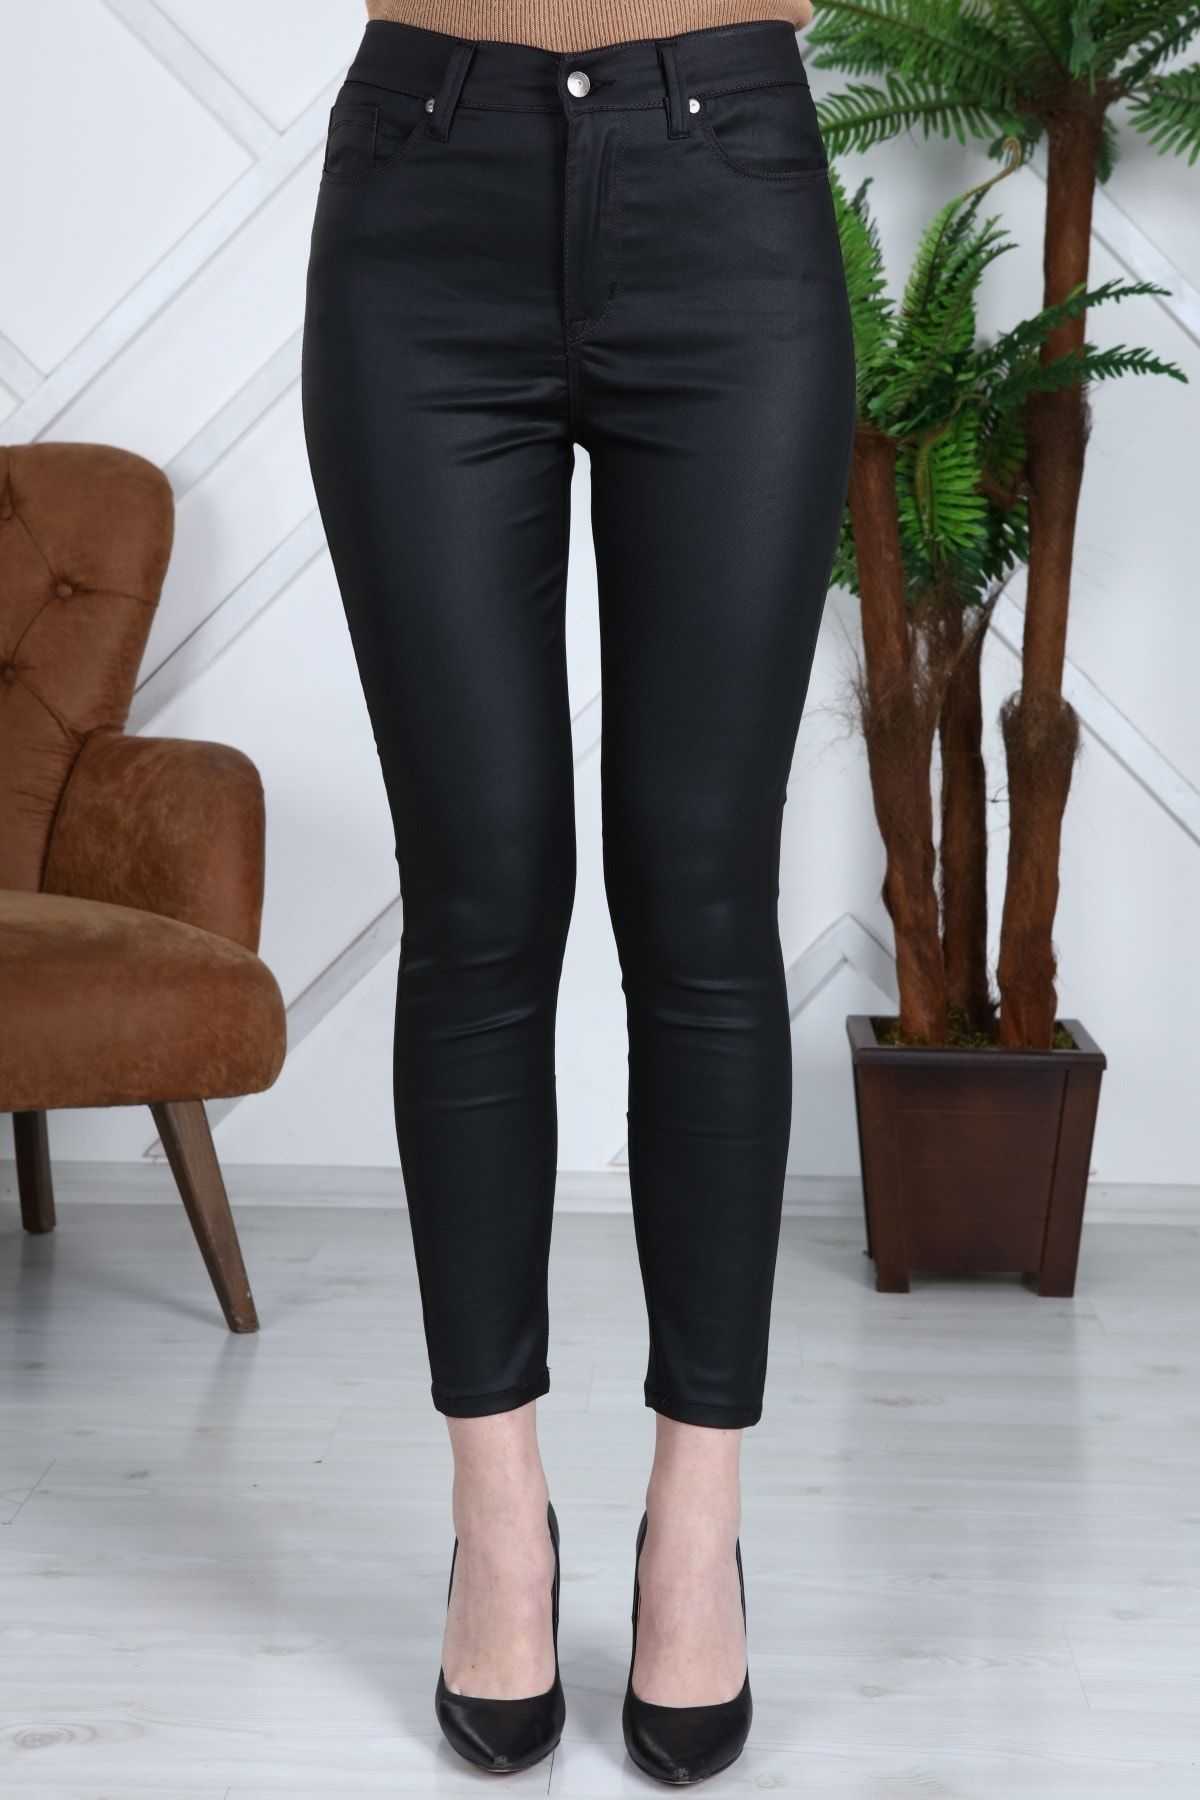 Gül Moda Kadın Siyah Mat Deri Pantolon Dar Paça Likralı Yüksek Bel G044